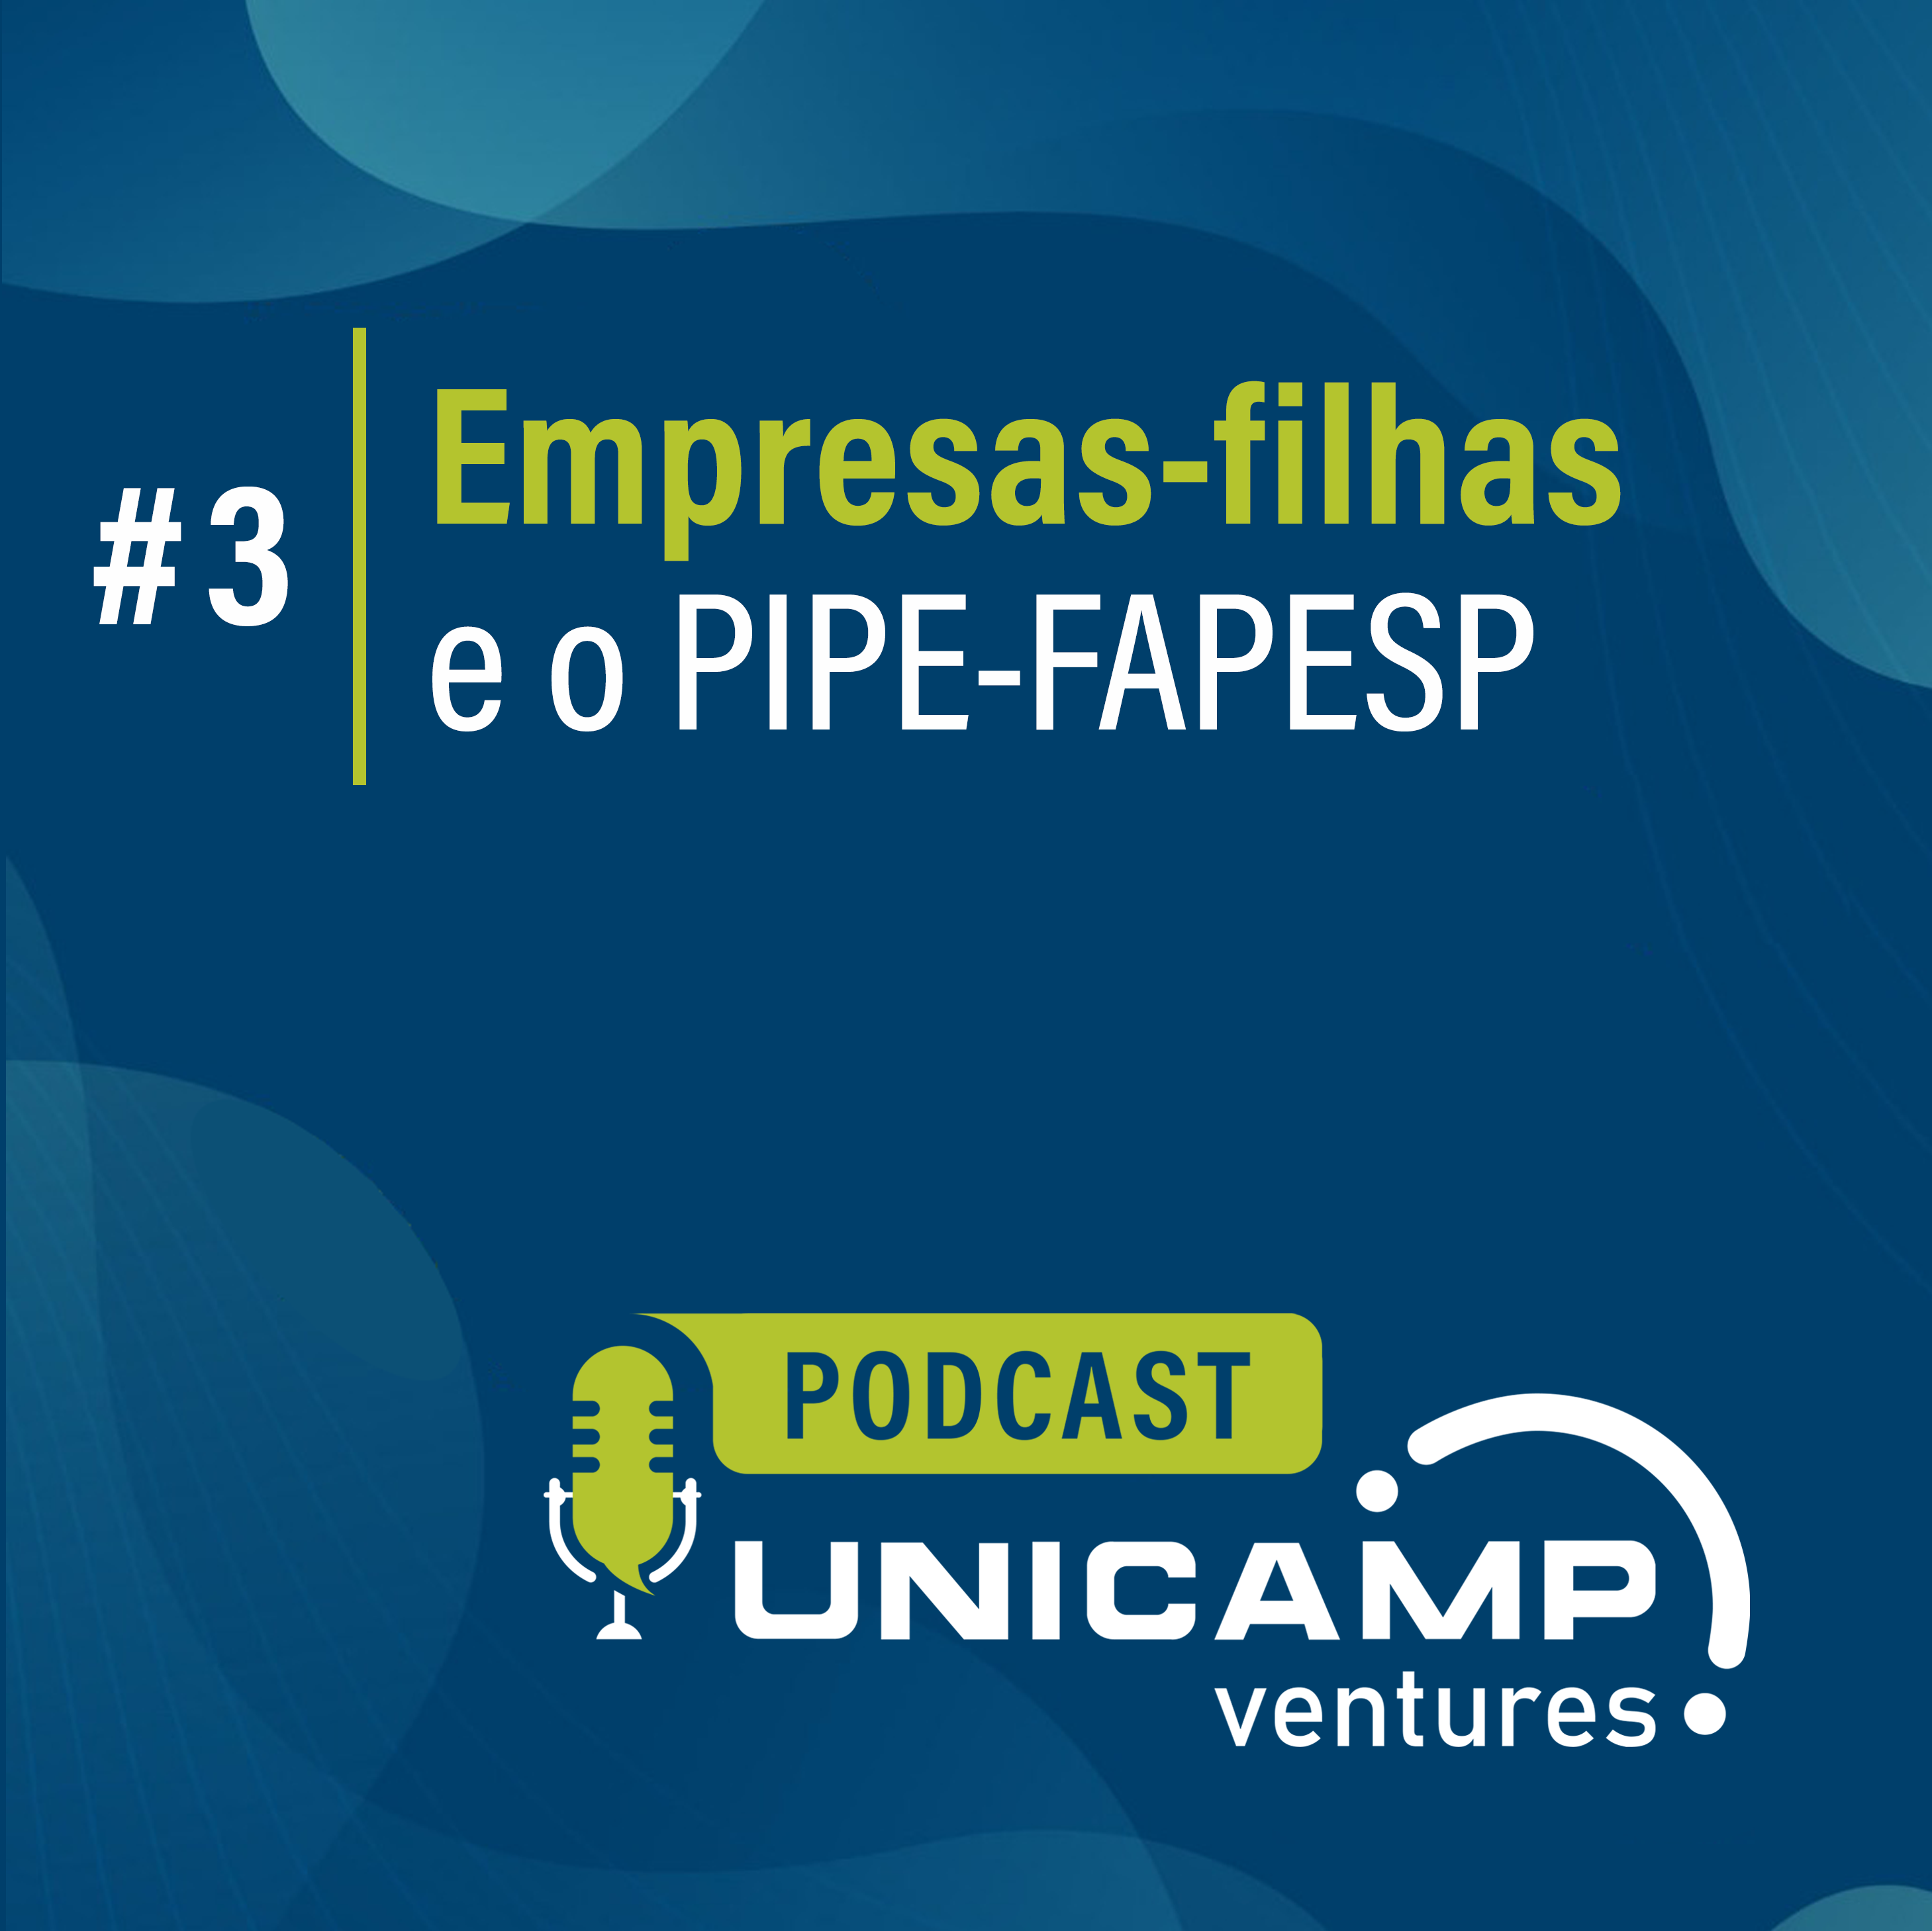 http://www.sec.unicamp.br/wp-content/uploads/2020/12/Podcast_3_Unicamp_Ventures_v3.png